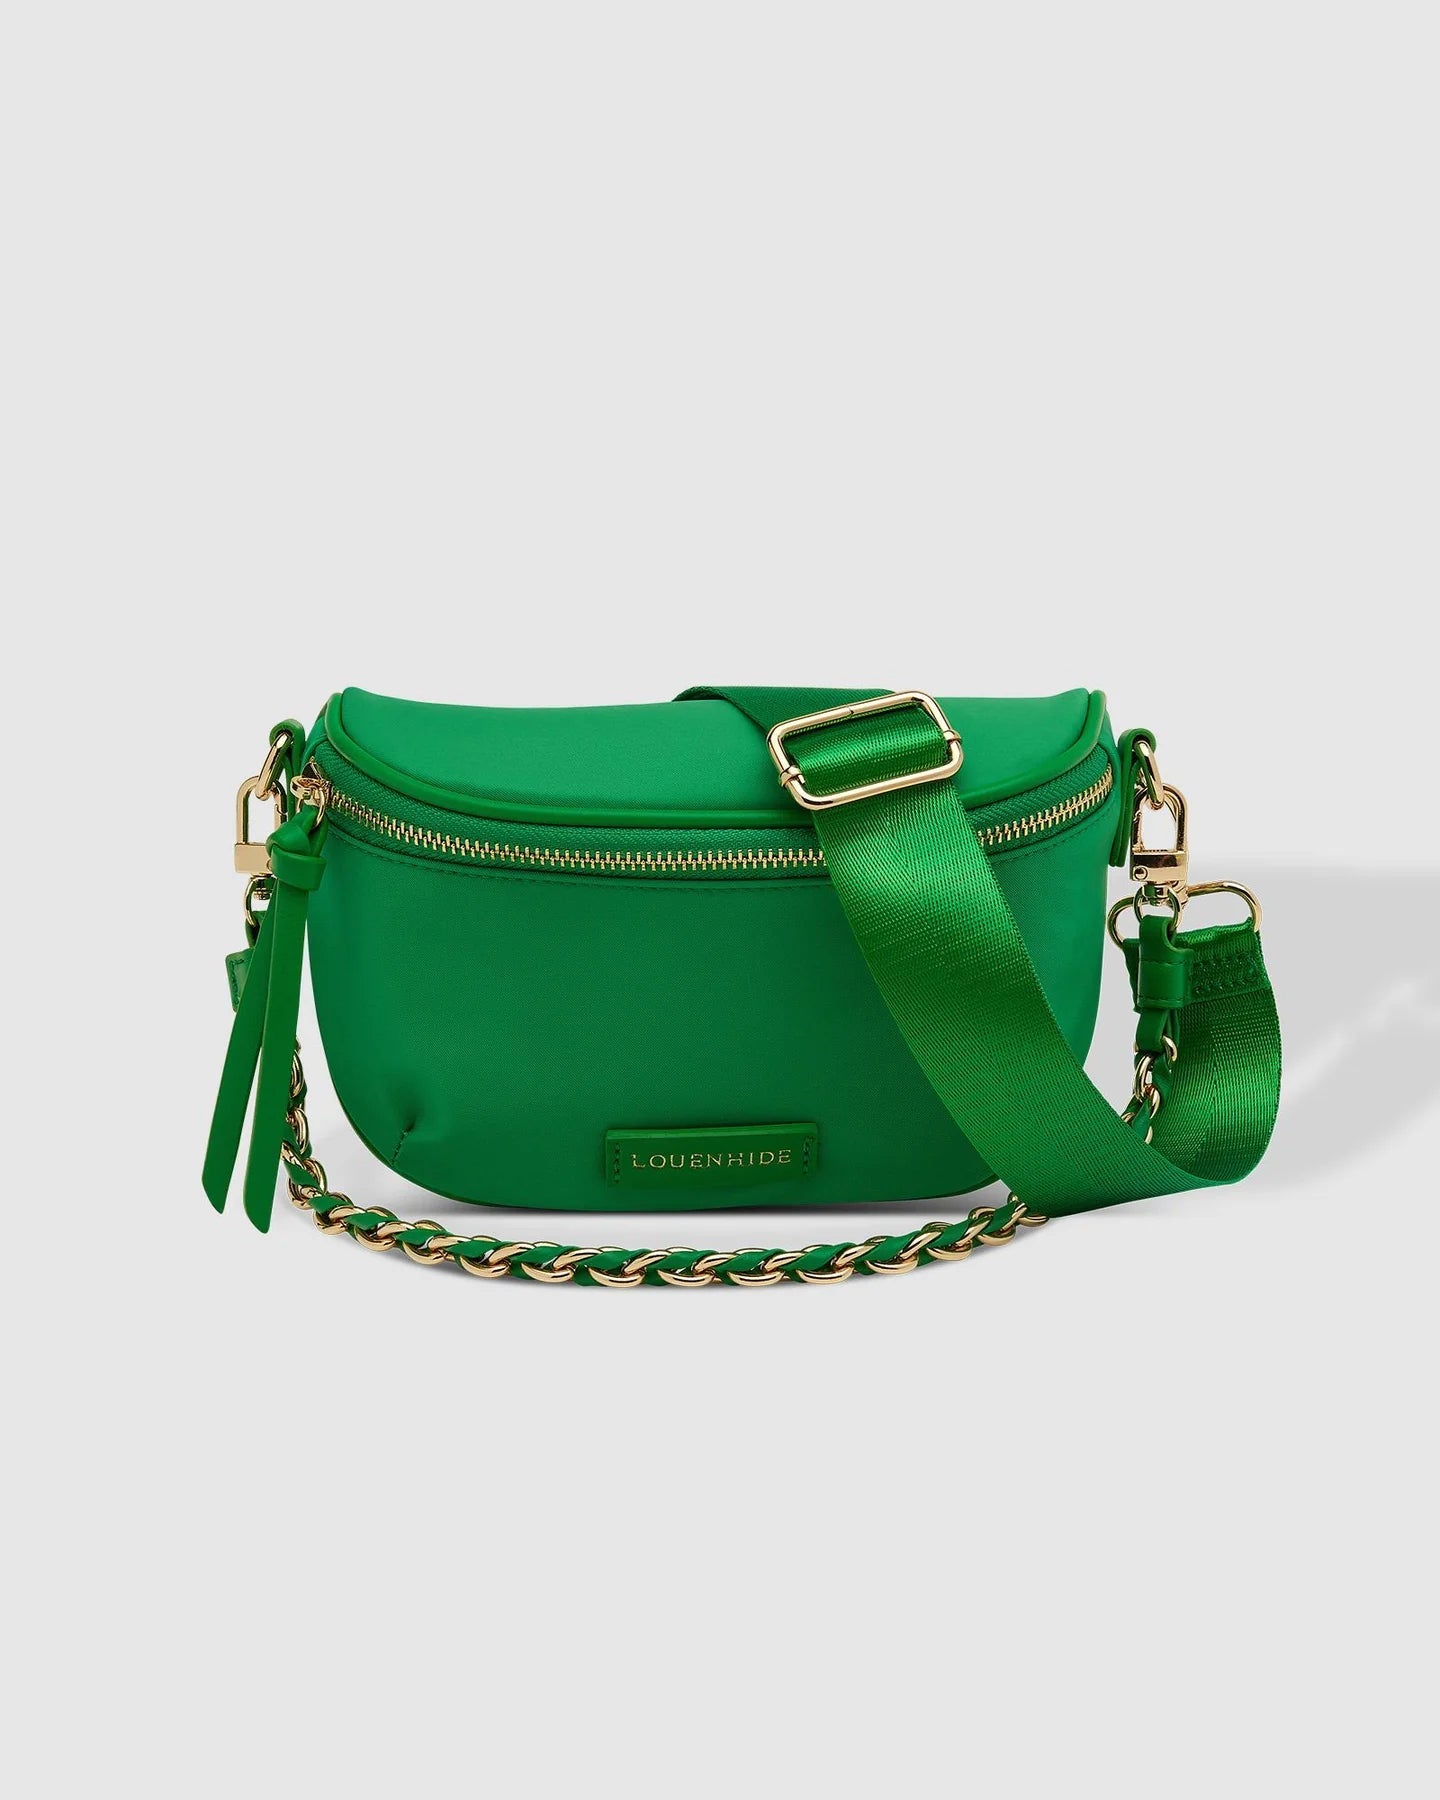 Halsey Nylon Sling Bag (Apple Green) - Something For Me​​